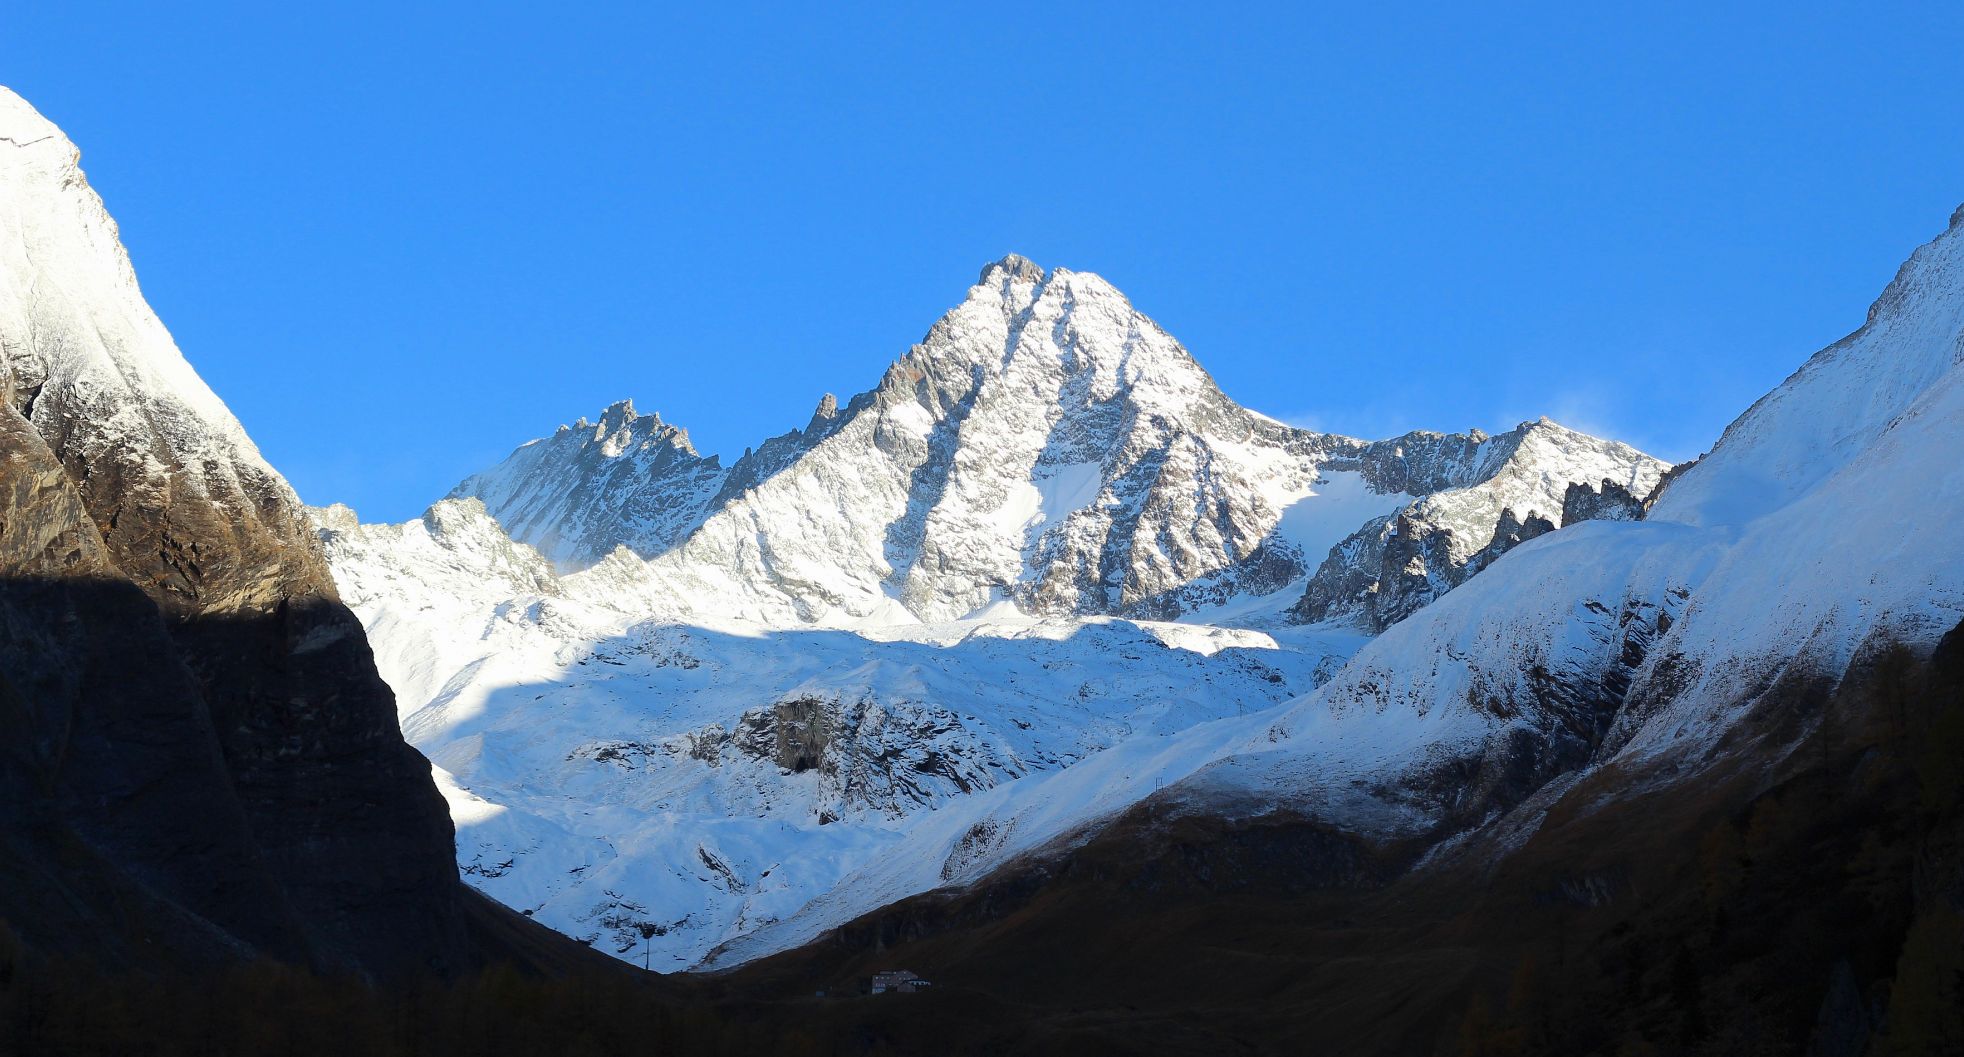 Oostenrijks hoogste berg, de Grossglockner (3798m), is gisteren prachtig wit geworden